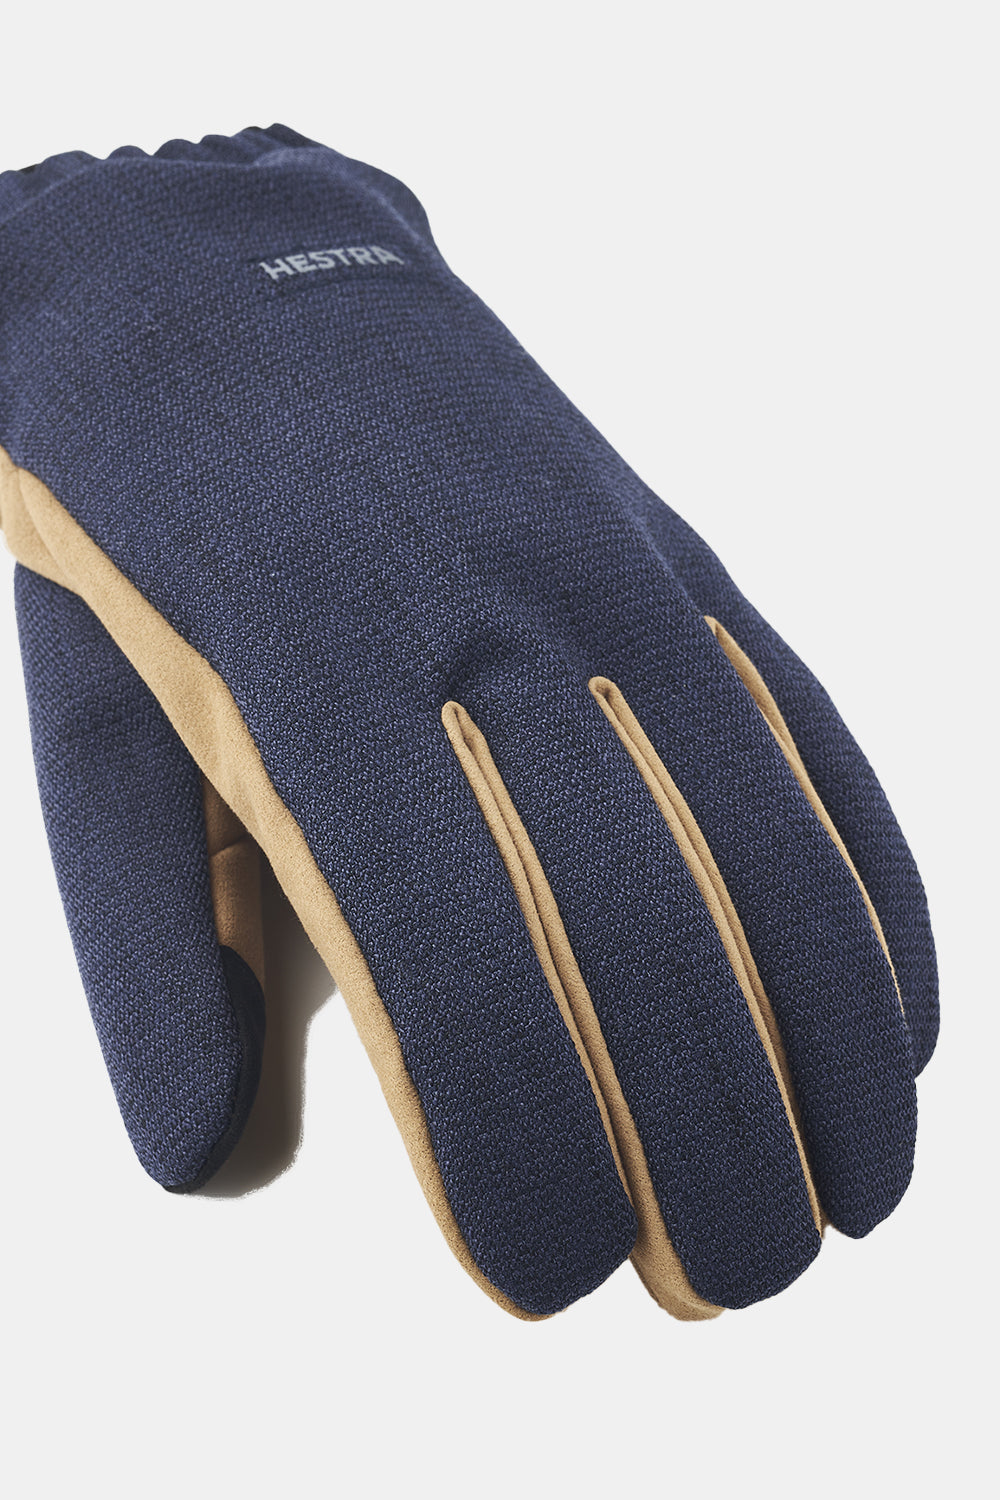 Hestra Zephyr Gloves (Navy)
